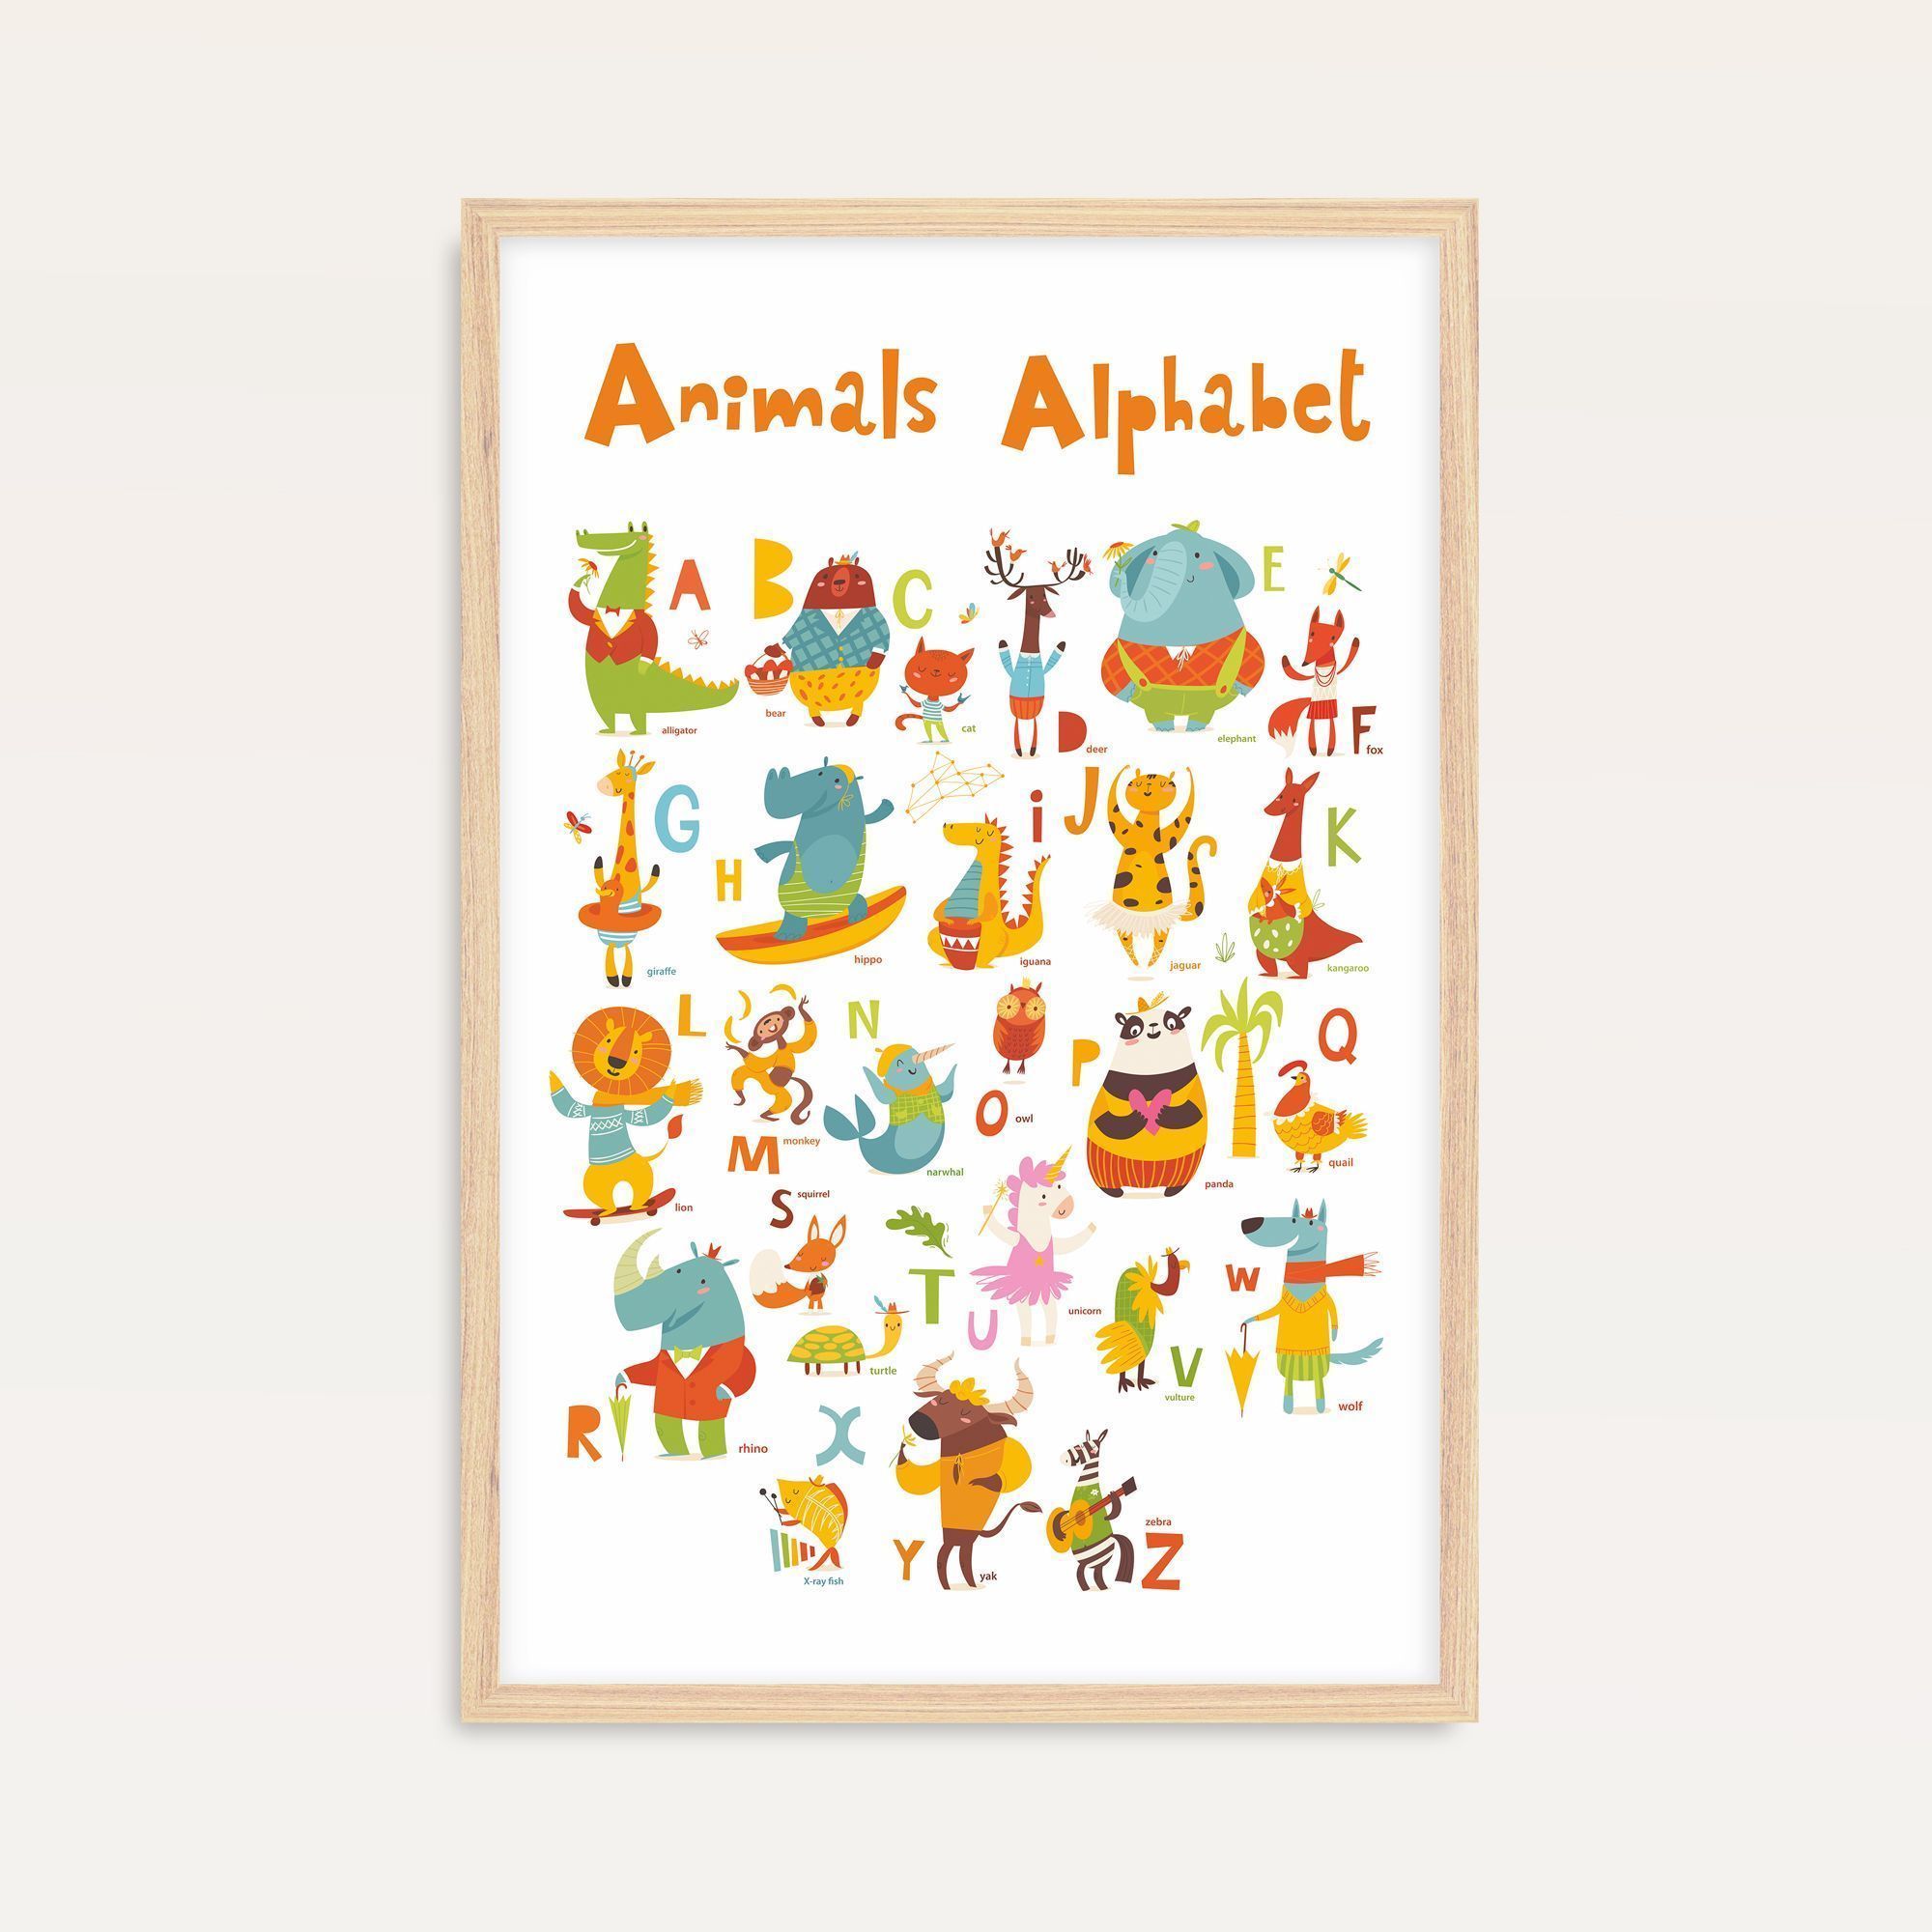 Постер "Animals Alphabet" от Интернет магазина Милота